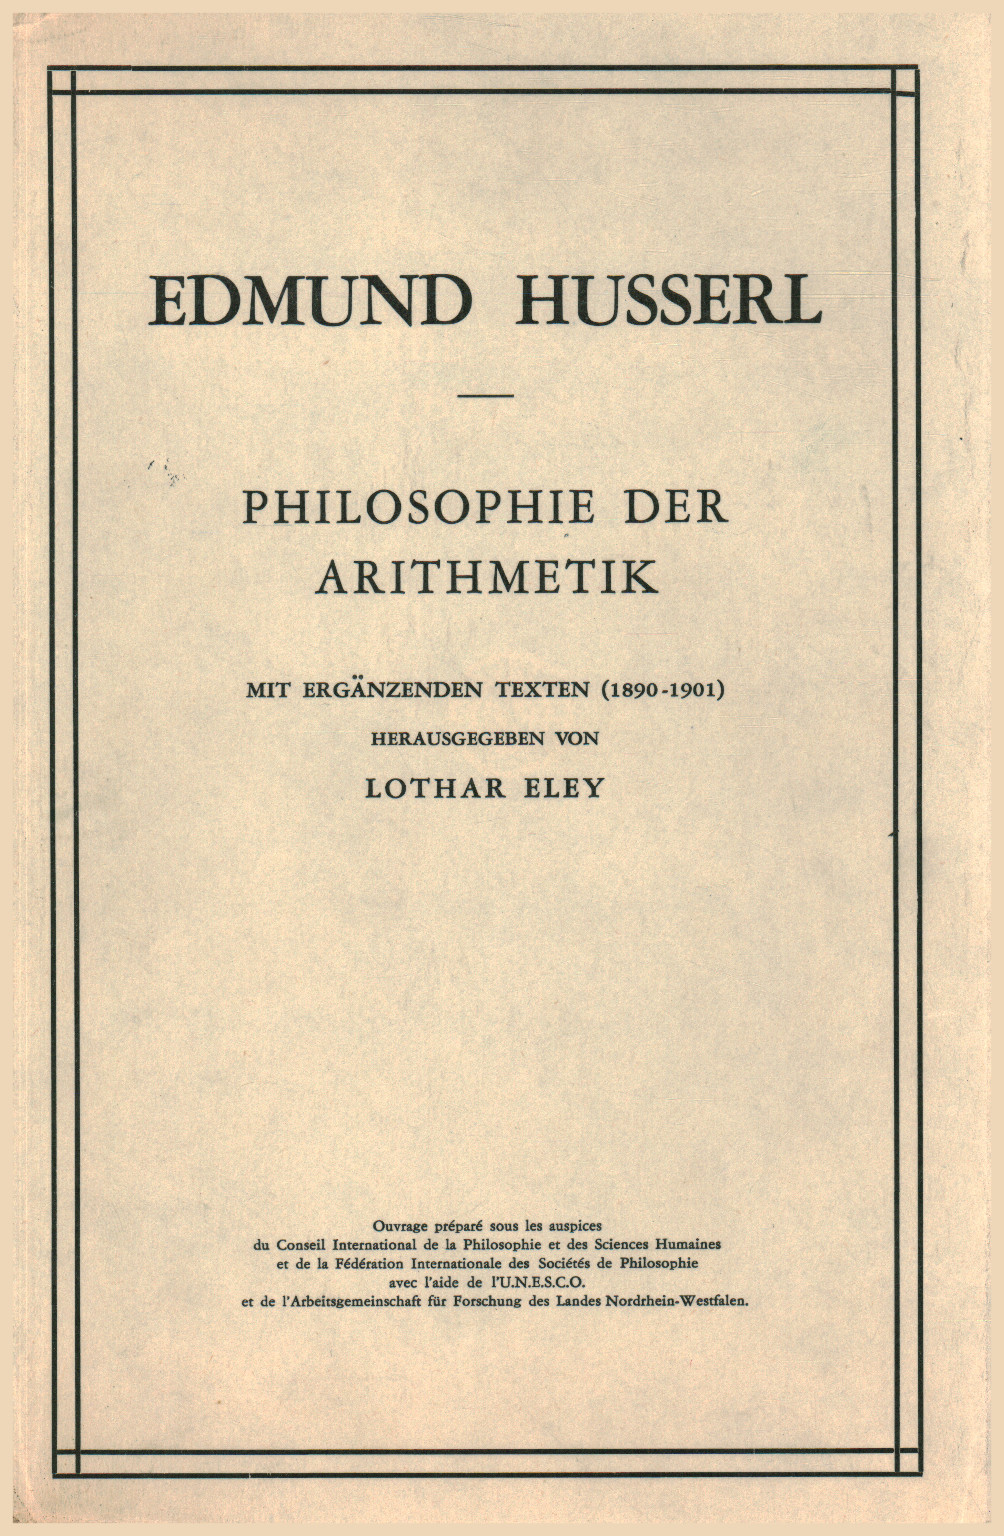 Philosophie der arithmetik, s.un.